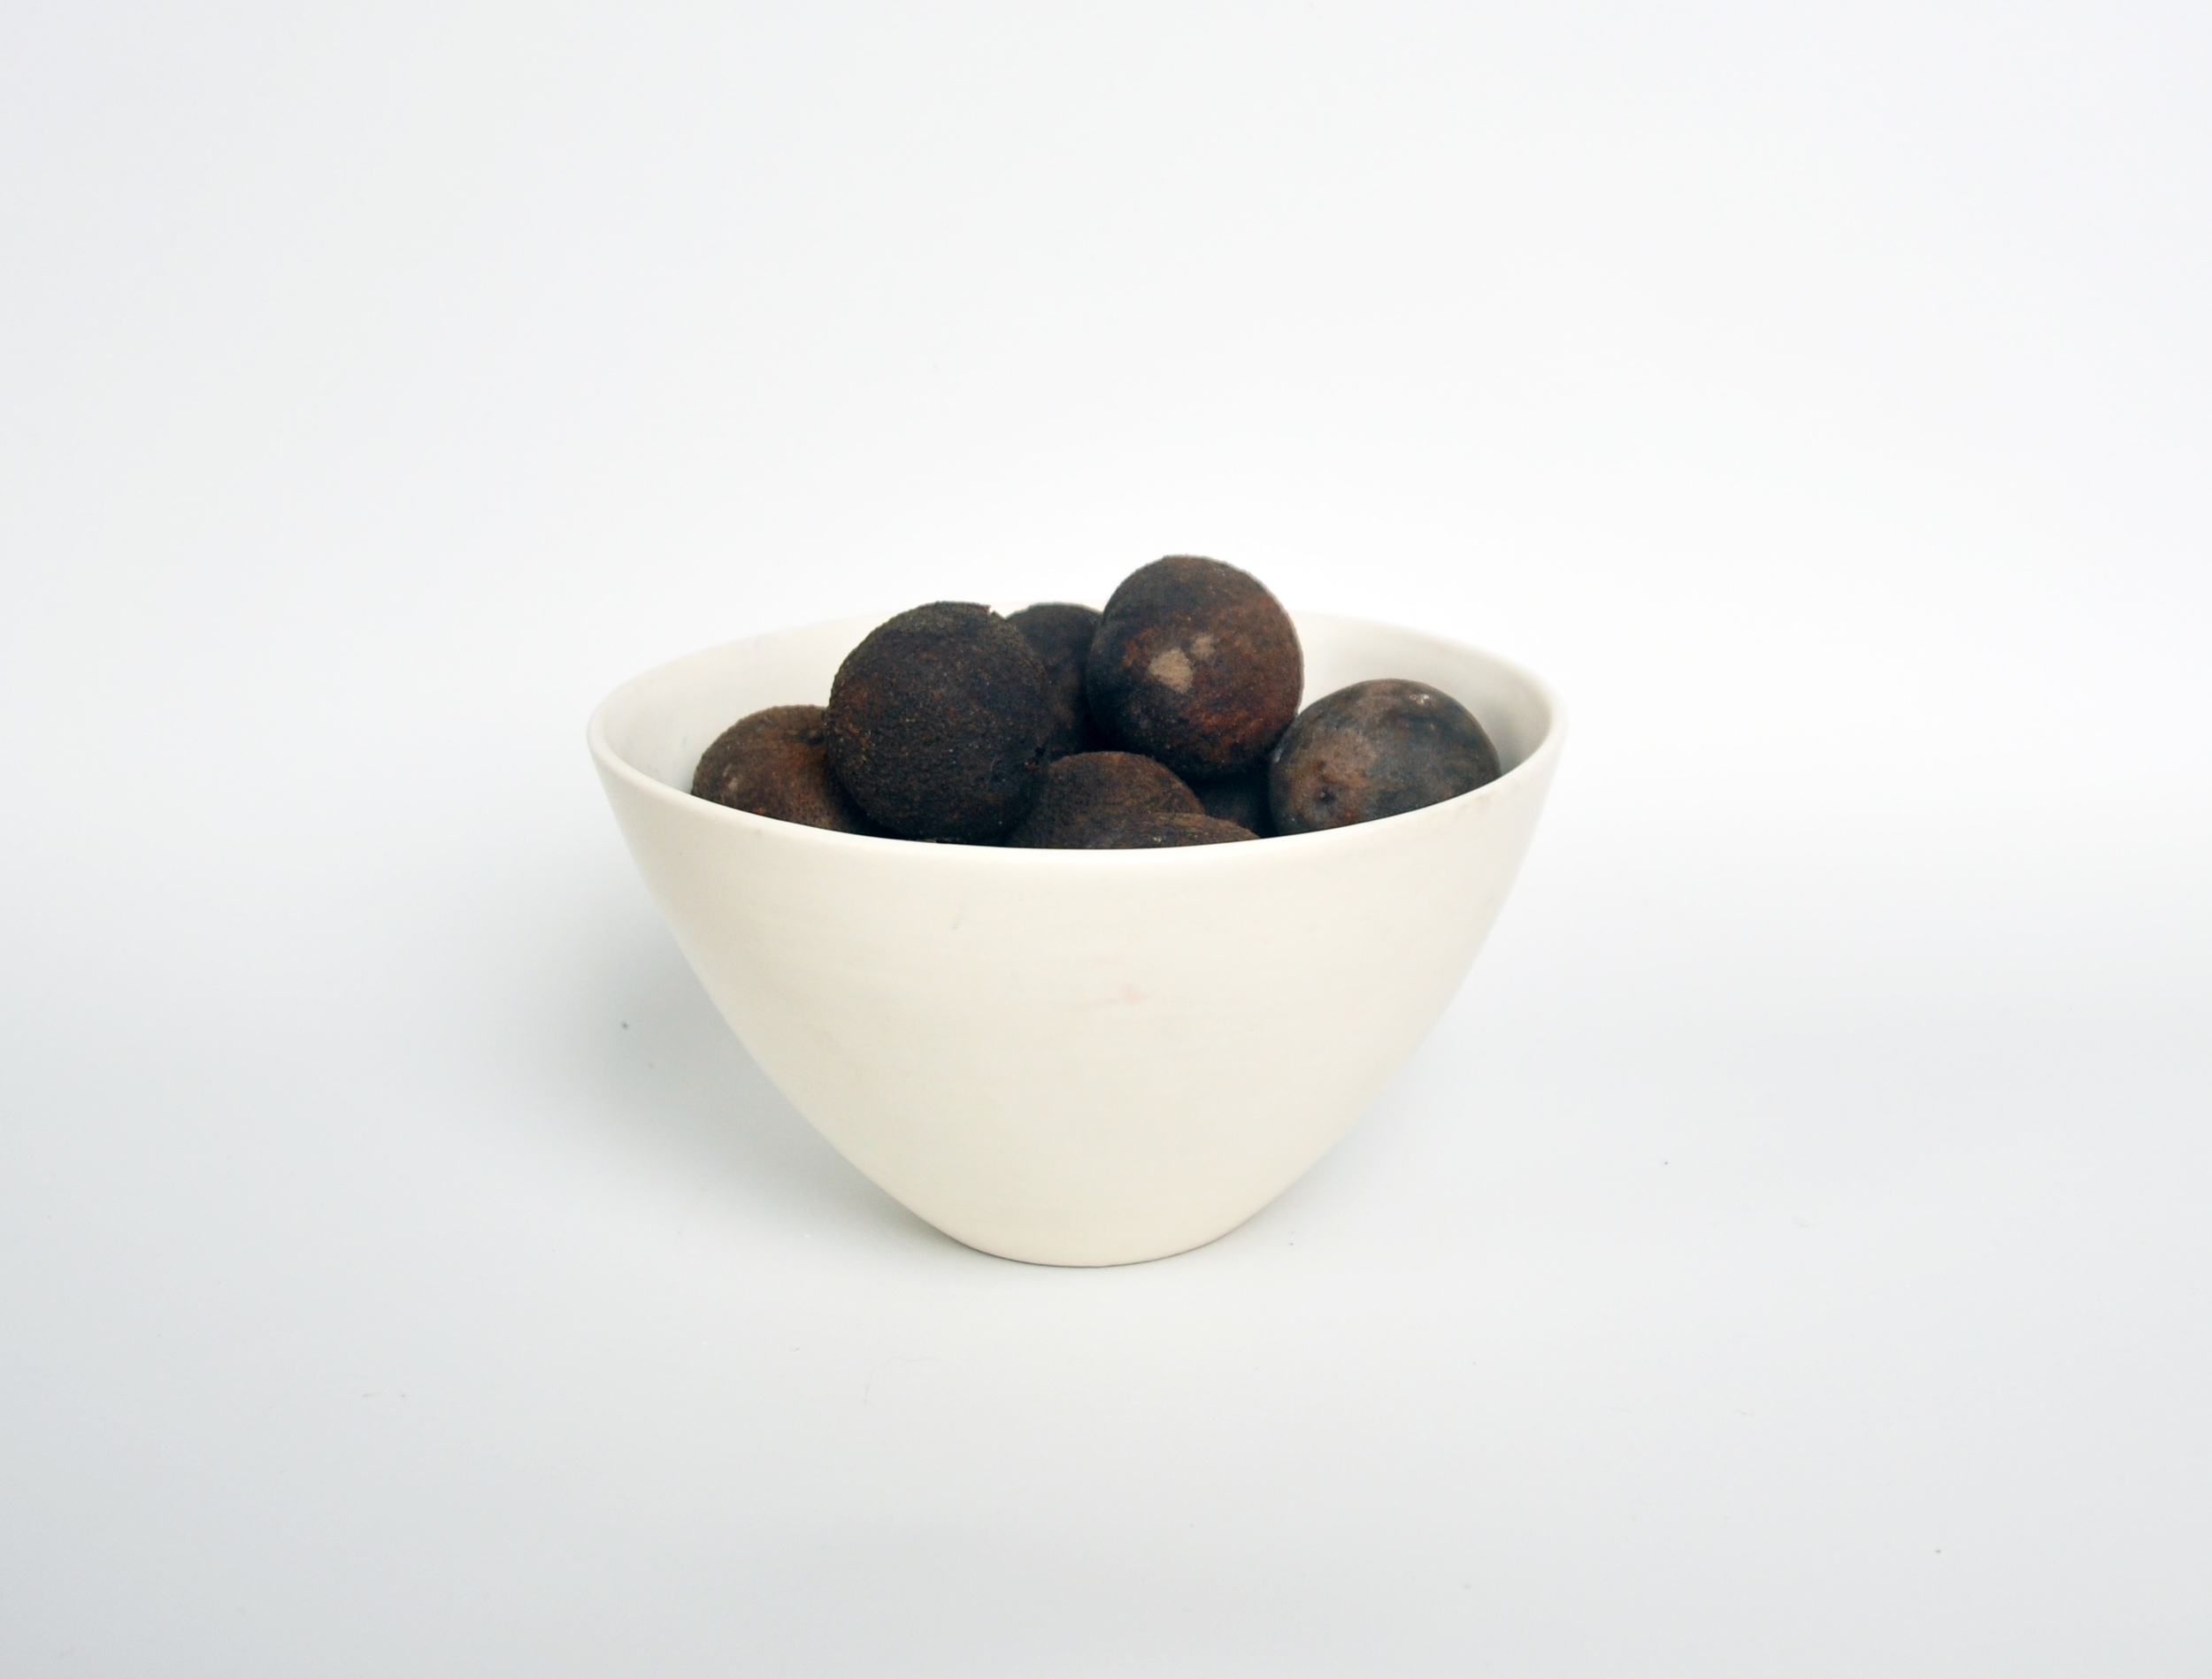 sm serving bowl w walnuts.jpg